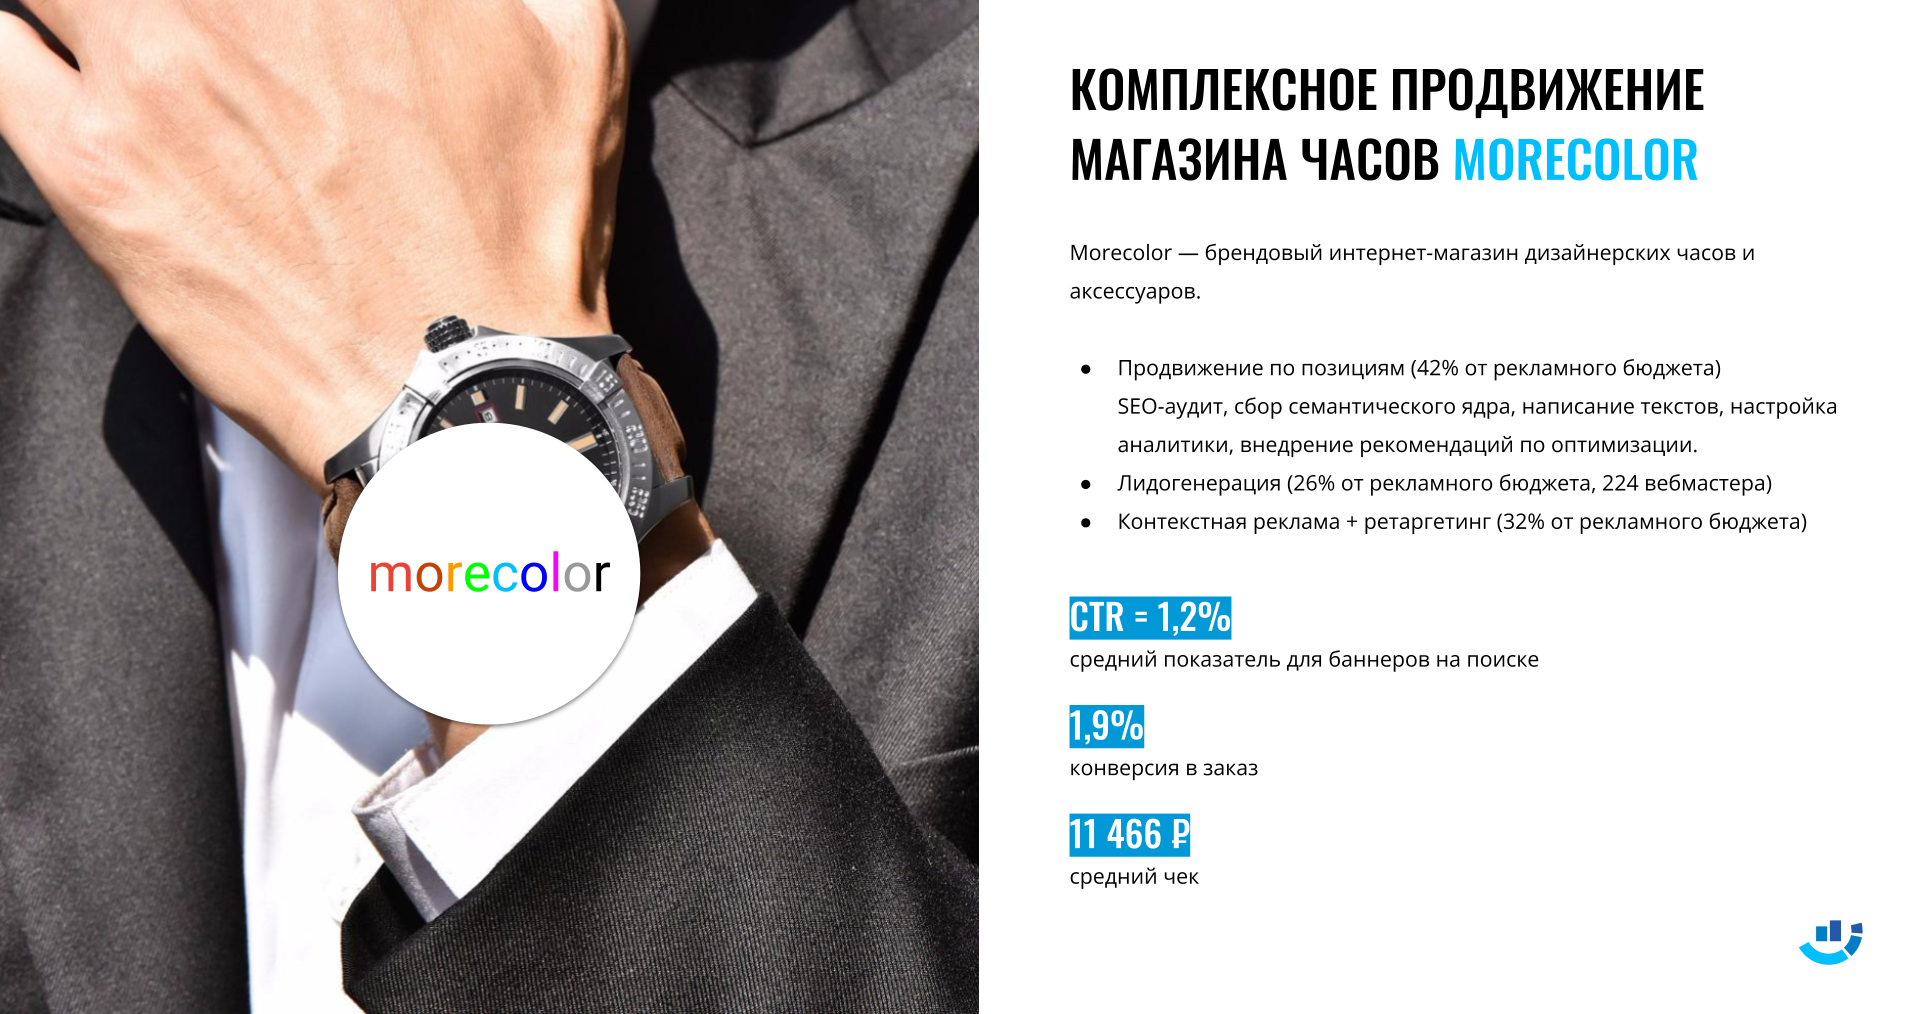 [Кейс] Продвижение магазина часов и аксессуаров Morecolor